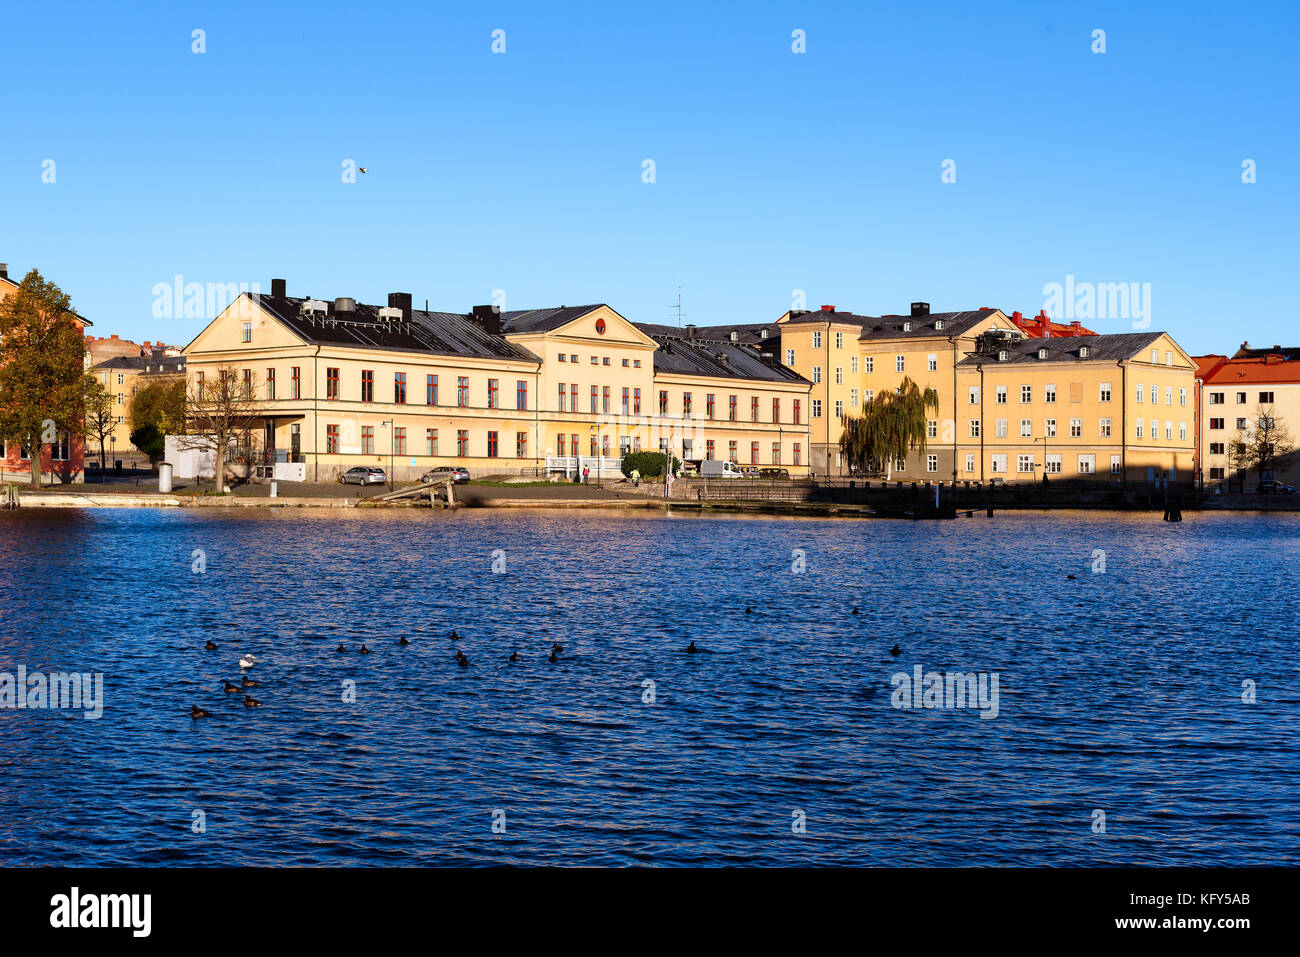 Karlskrona, Schweden - 30. Oktober 2017: Umwelt Dokumentarfilm. Die alten sparre Bataillon Gebäude vom Meer aus gesehen, jetzt Weltkulturerbe und uns Stockfoto